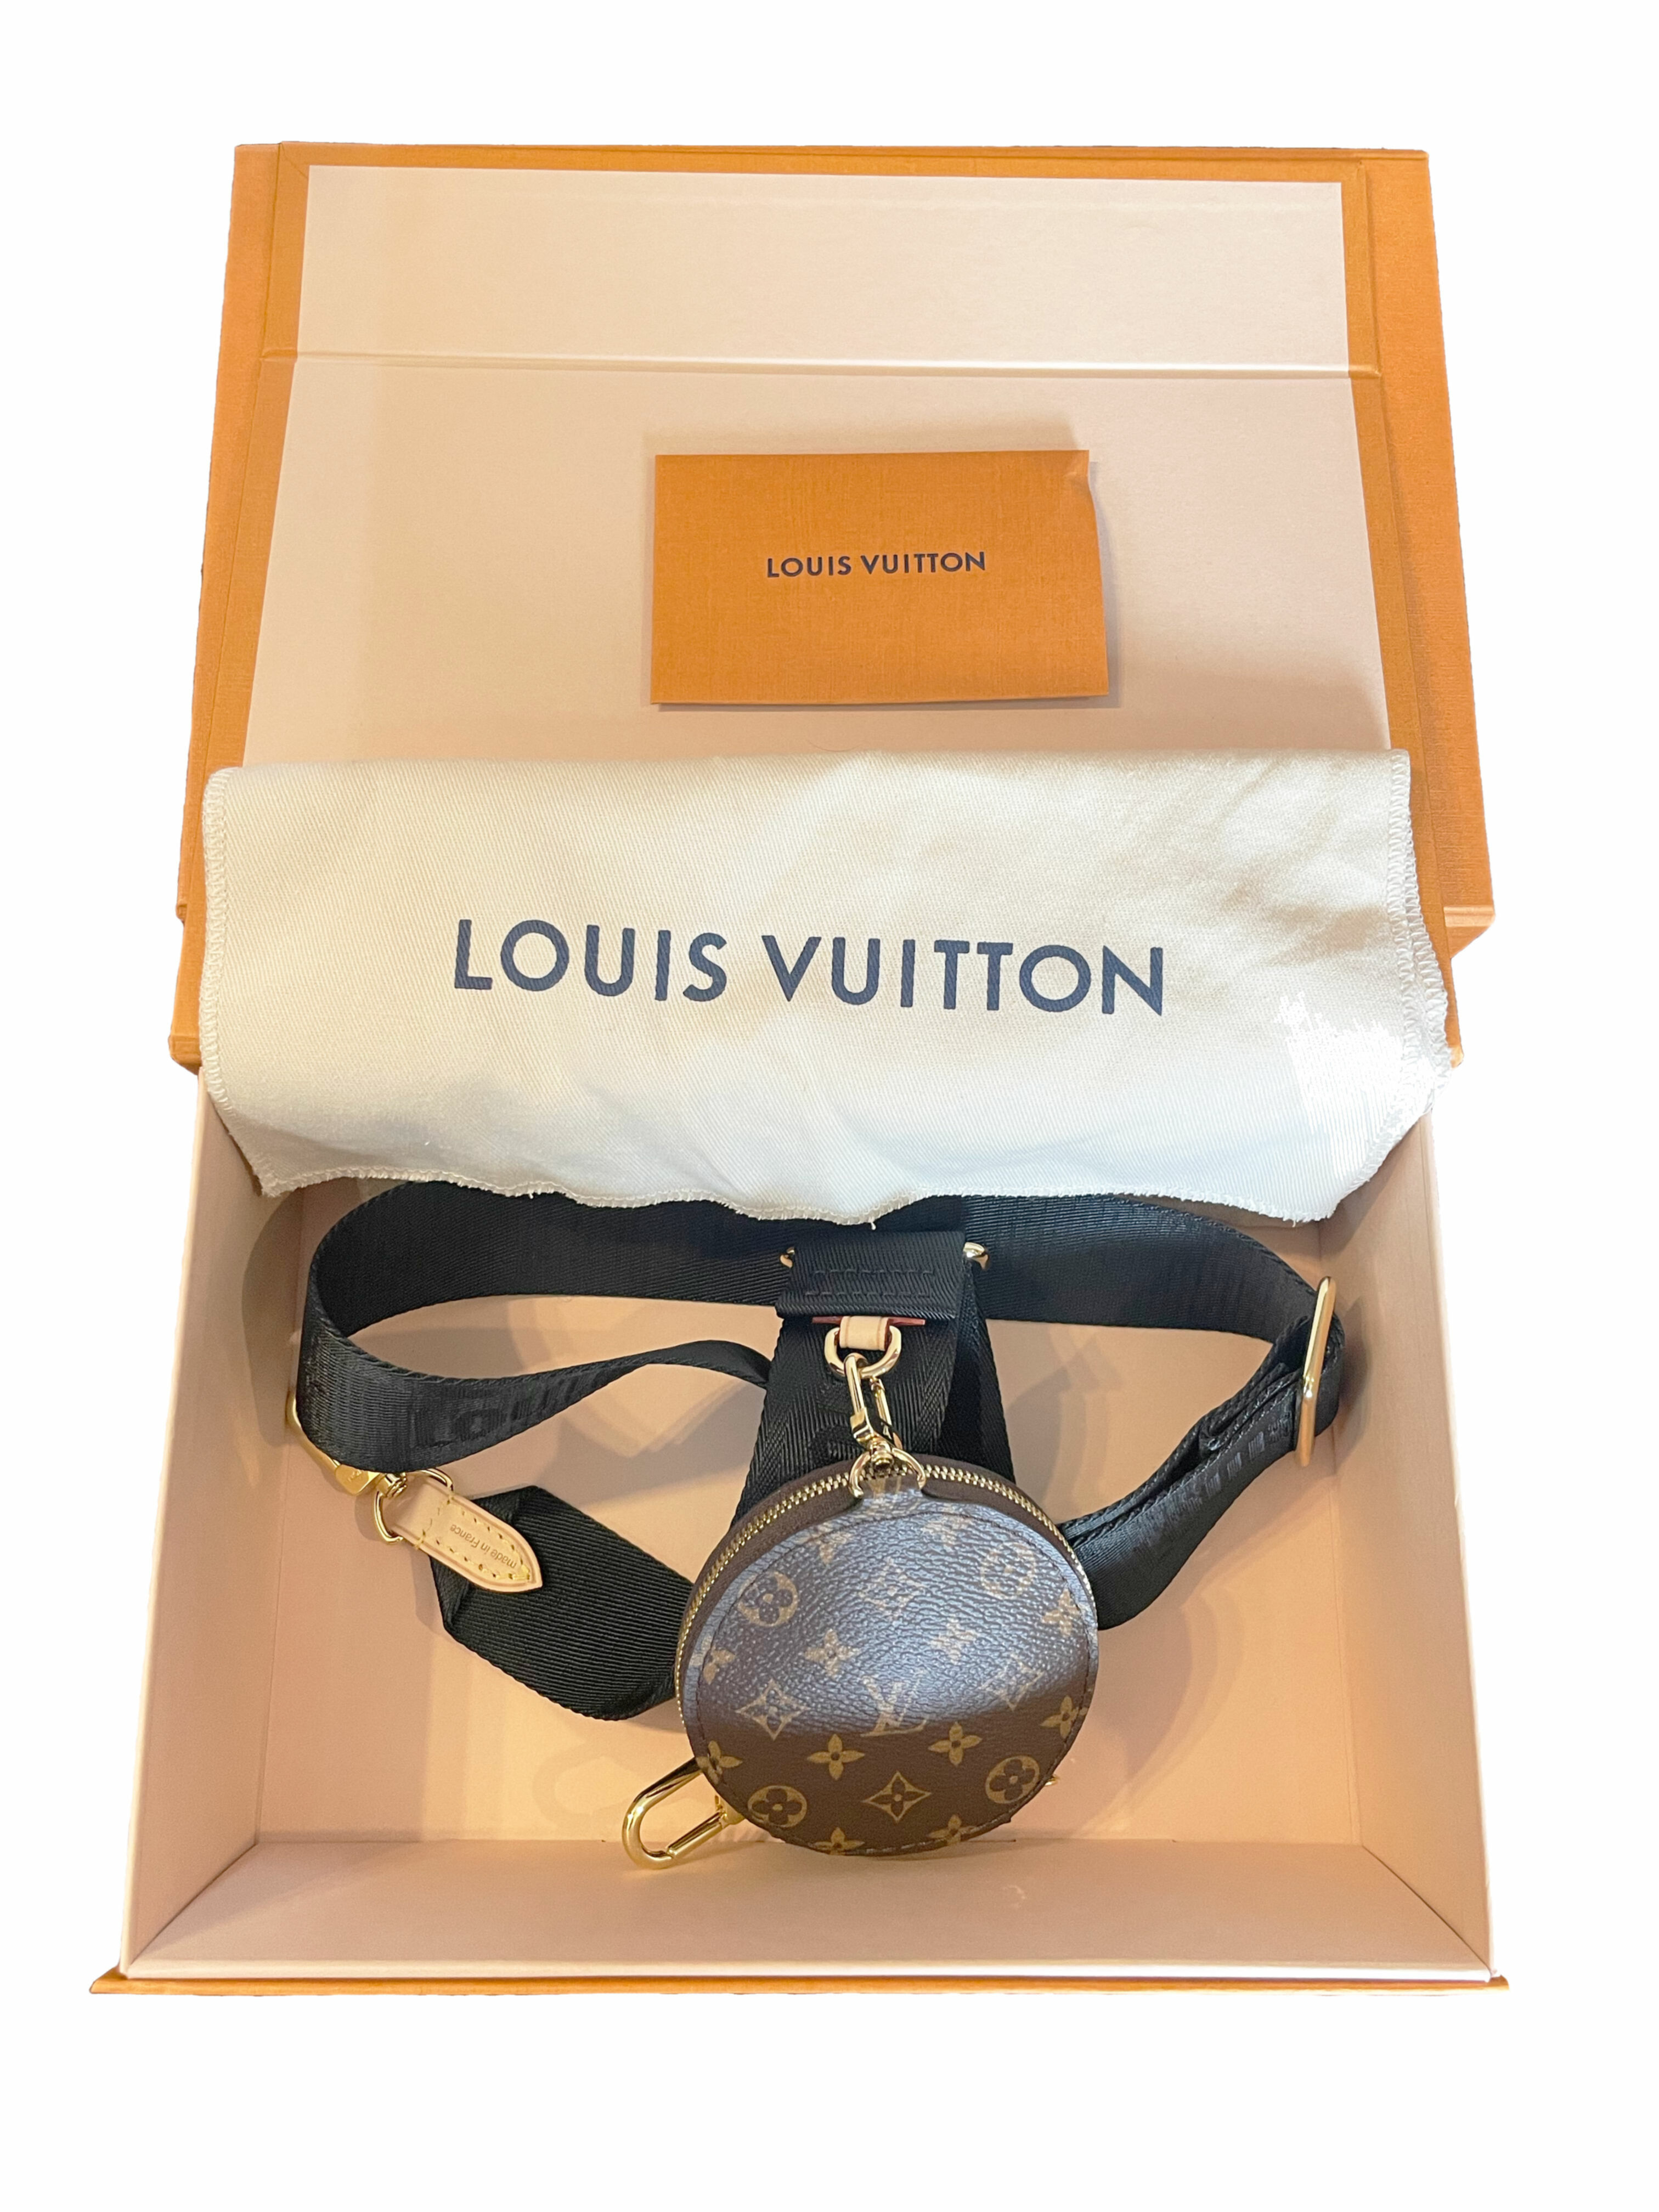 Louis Vuitton muchos productos más en Zafiro Store.